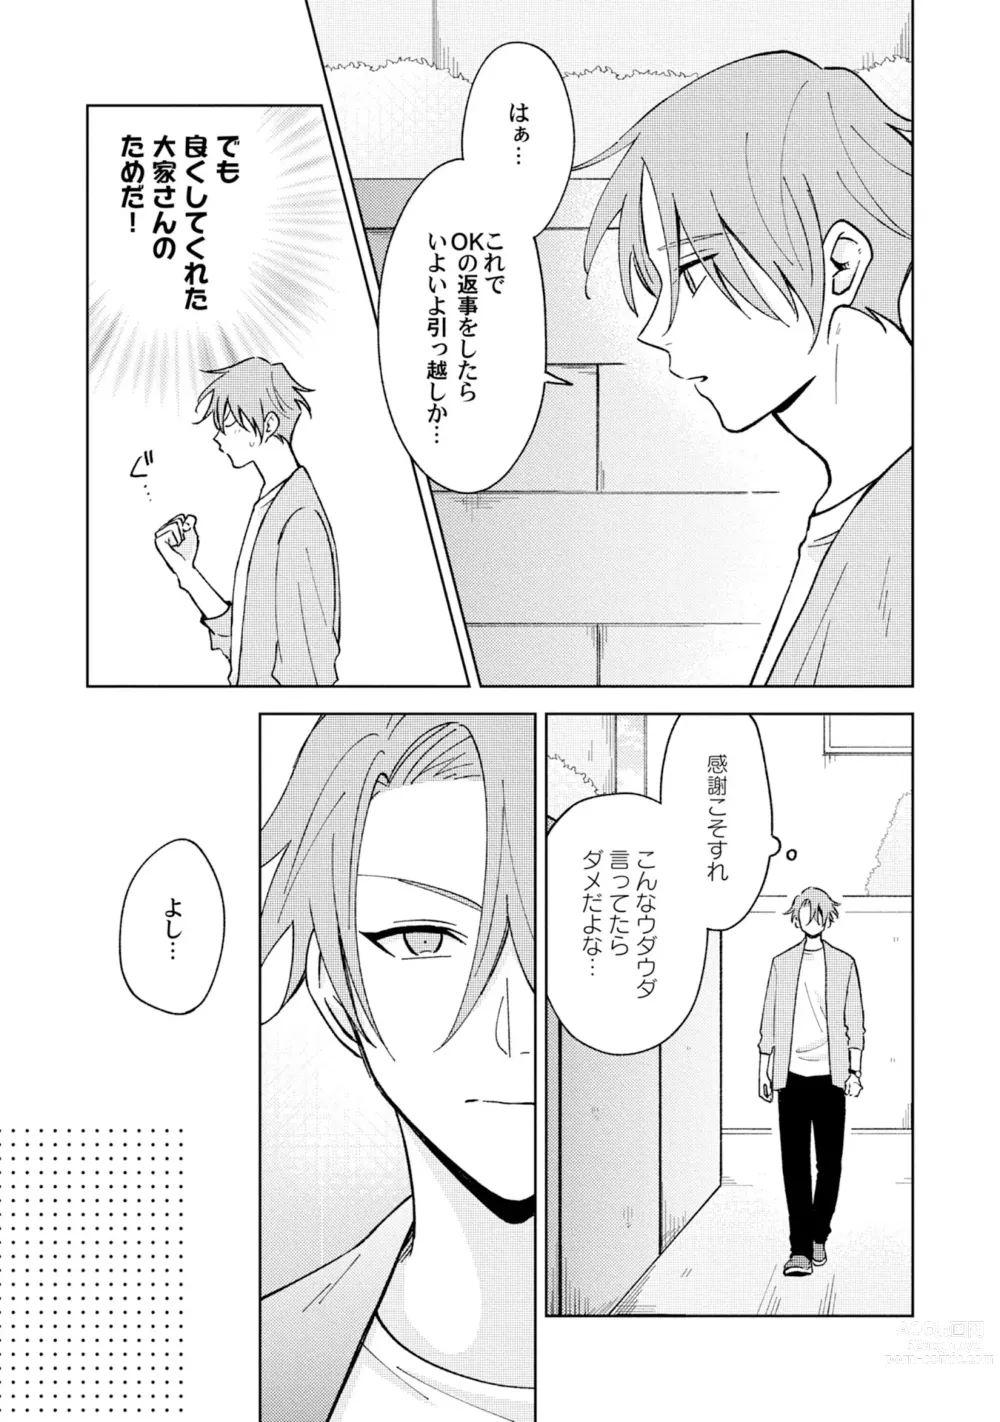 Page 9 of manga Toho 3-byou no Trouble Love Room 5